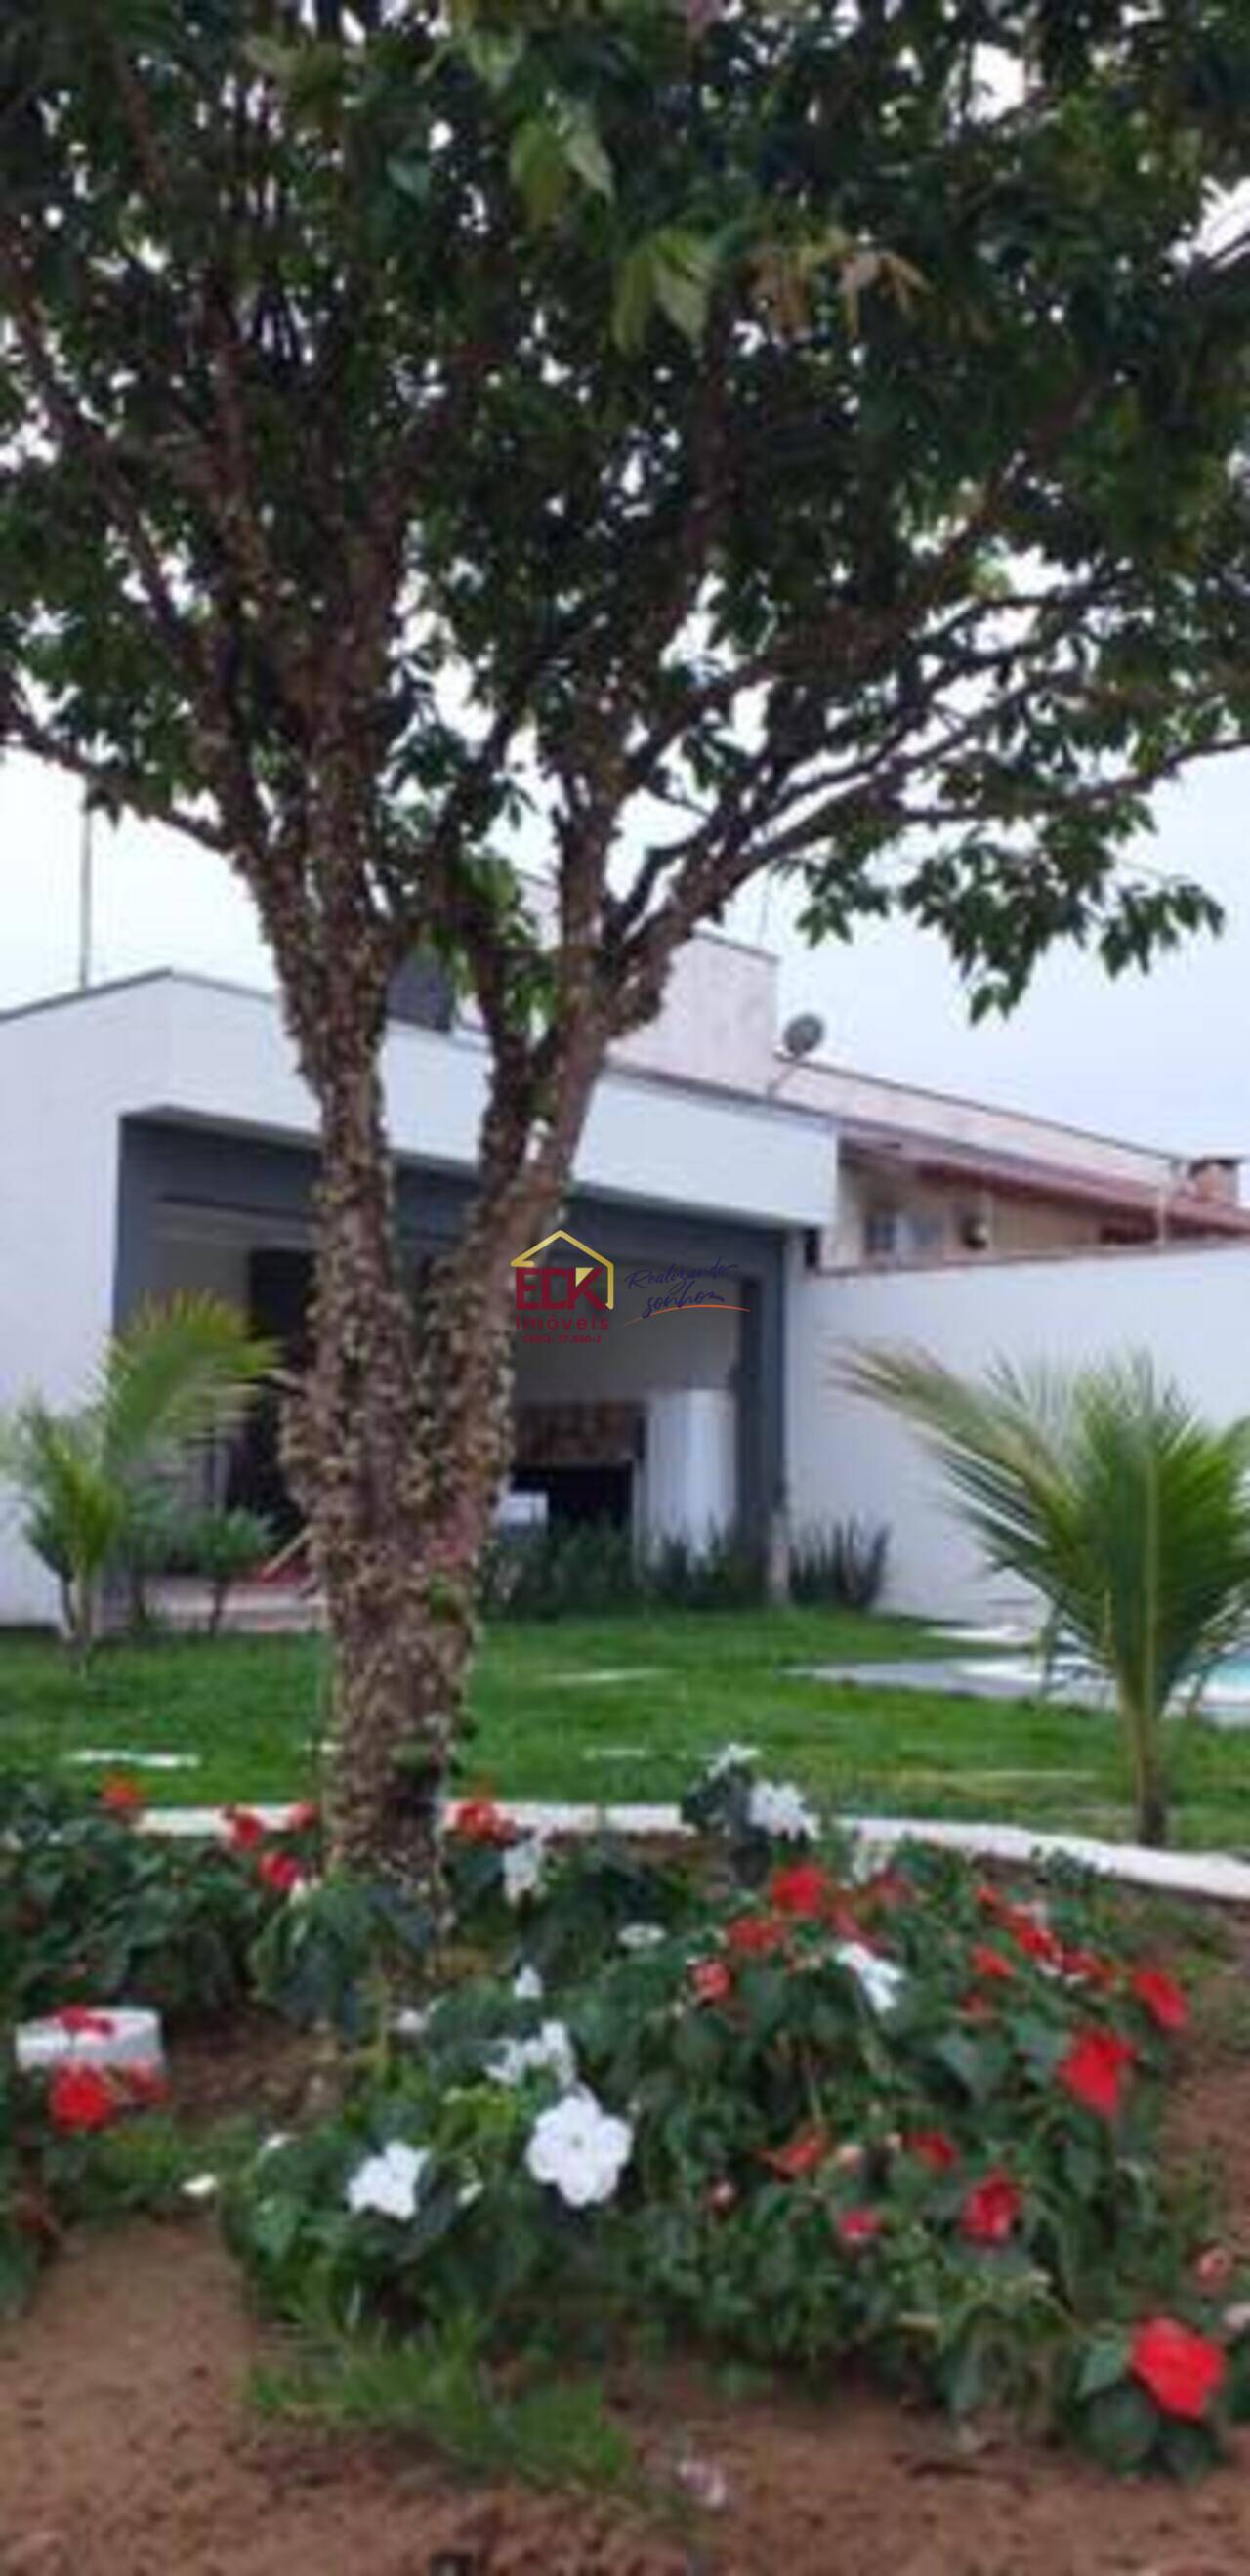 Sobrado Jardim Residencial Doutor Lessa, Pindamonhangaba - SP